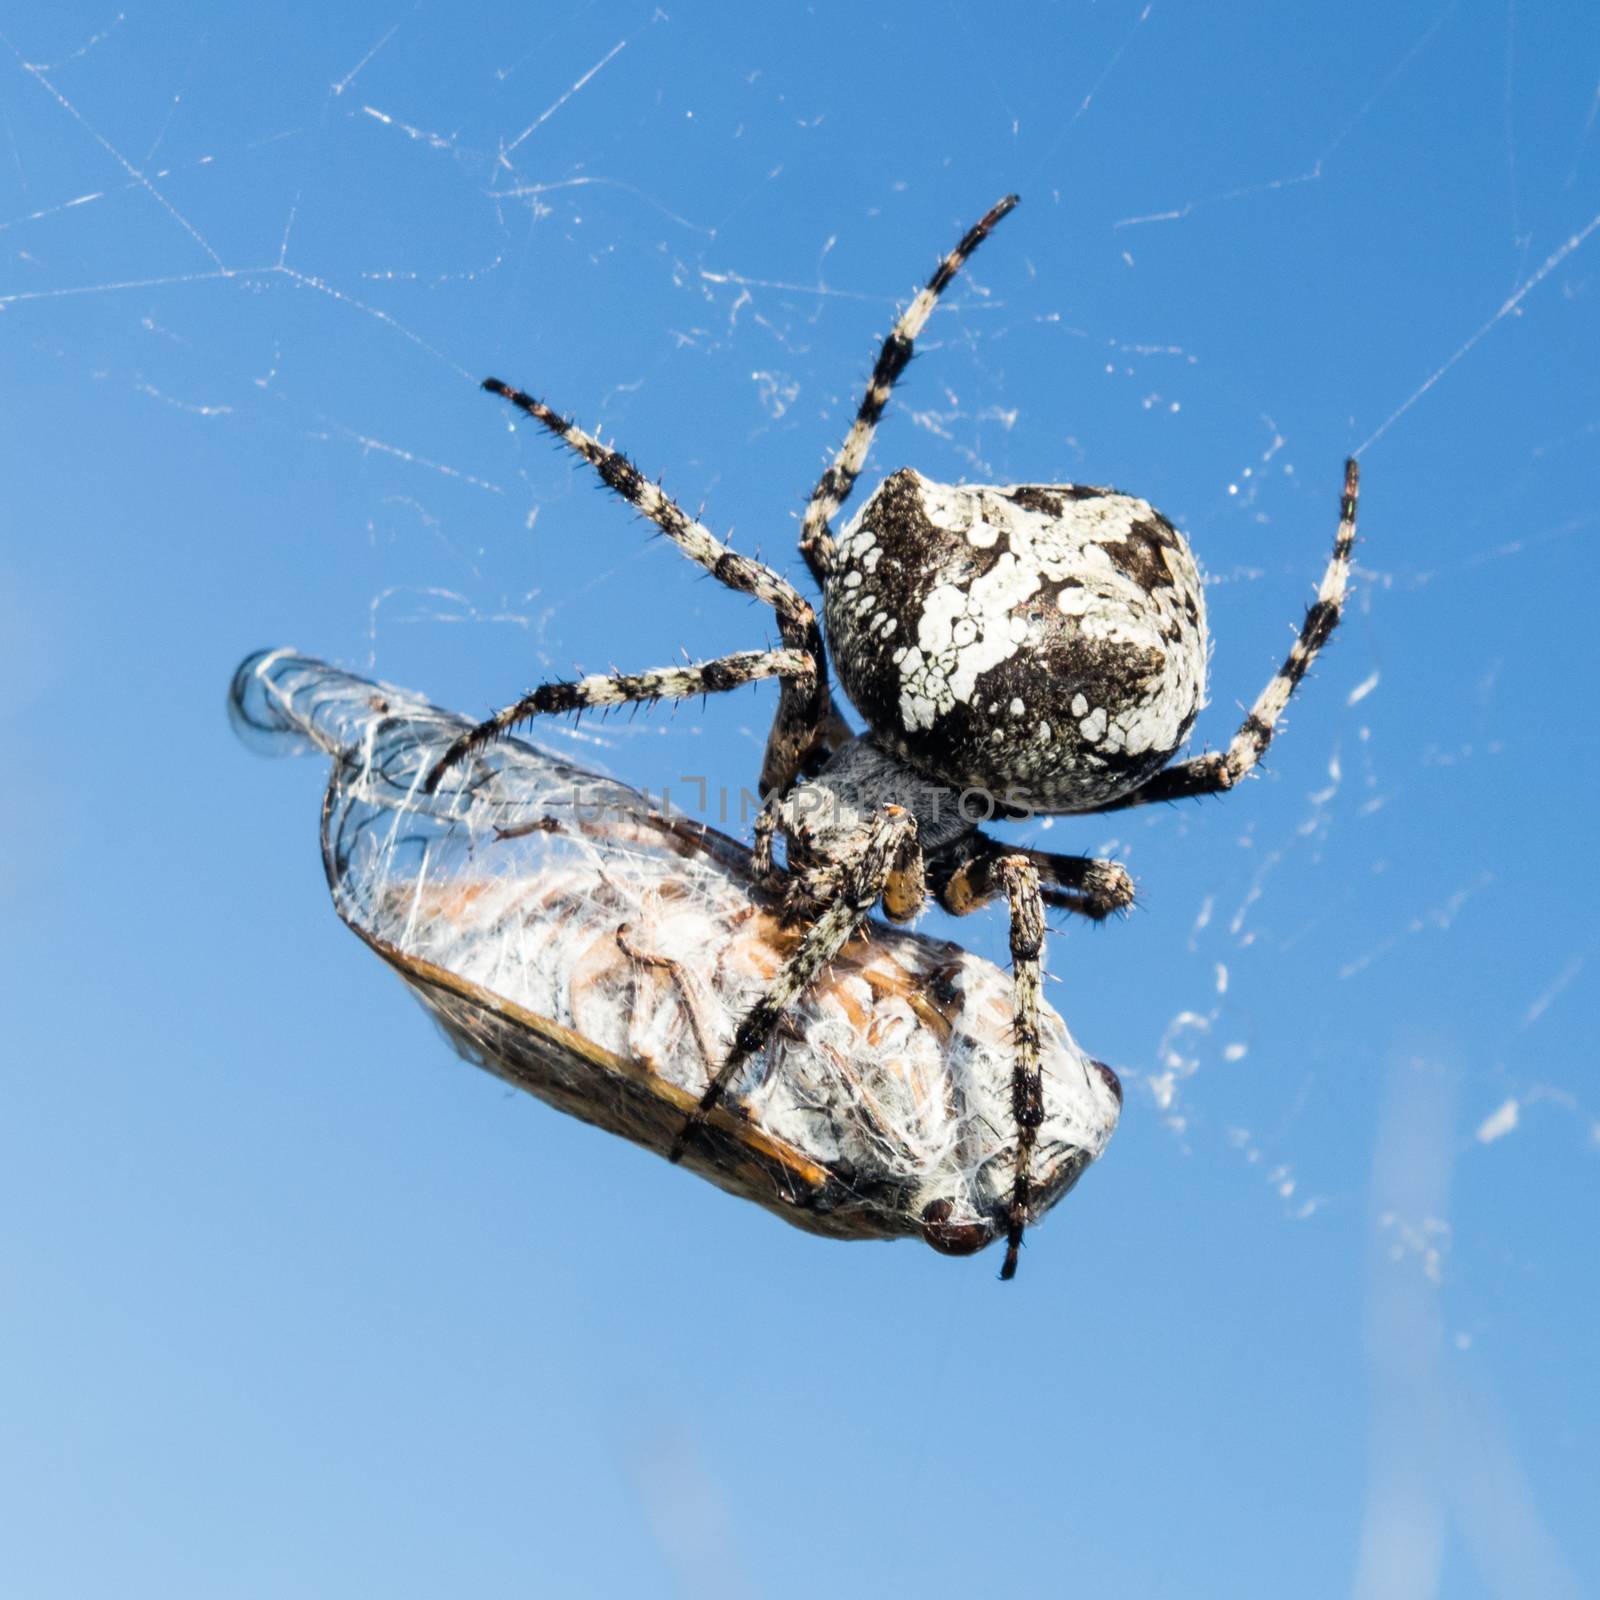 European Garden Spider, Araneus Diadematus or Cross spider with pray in spider web.